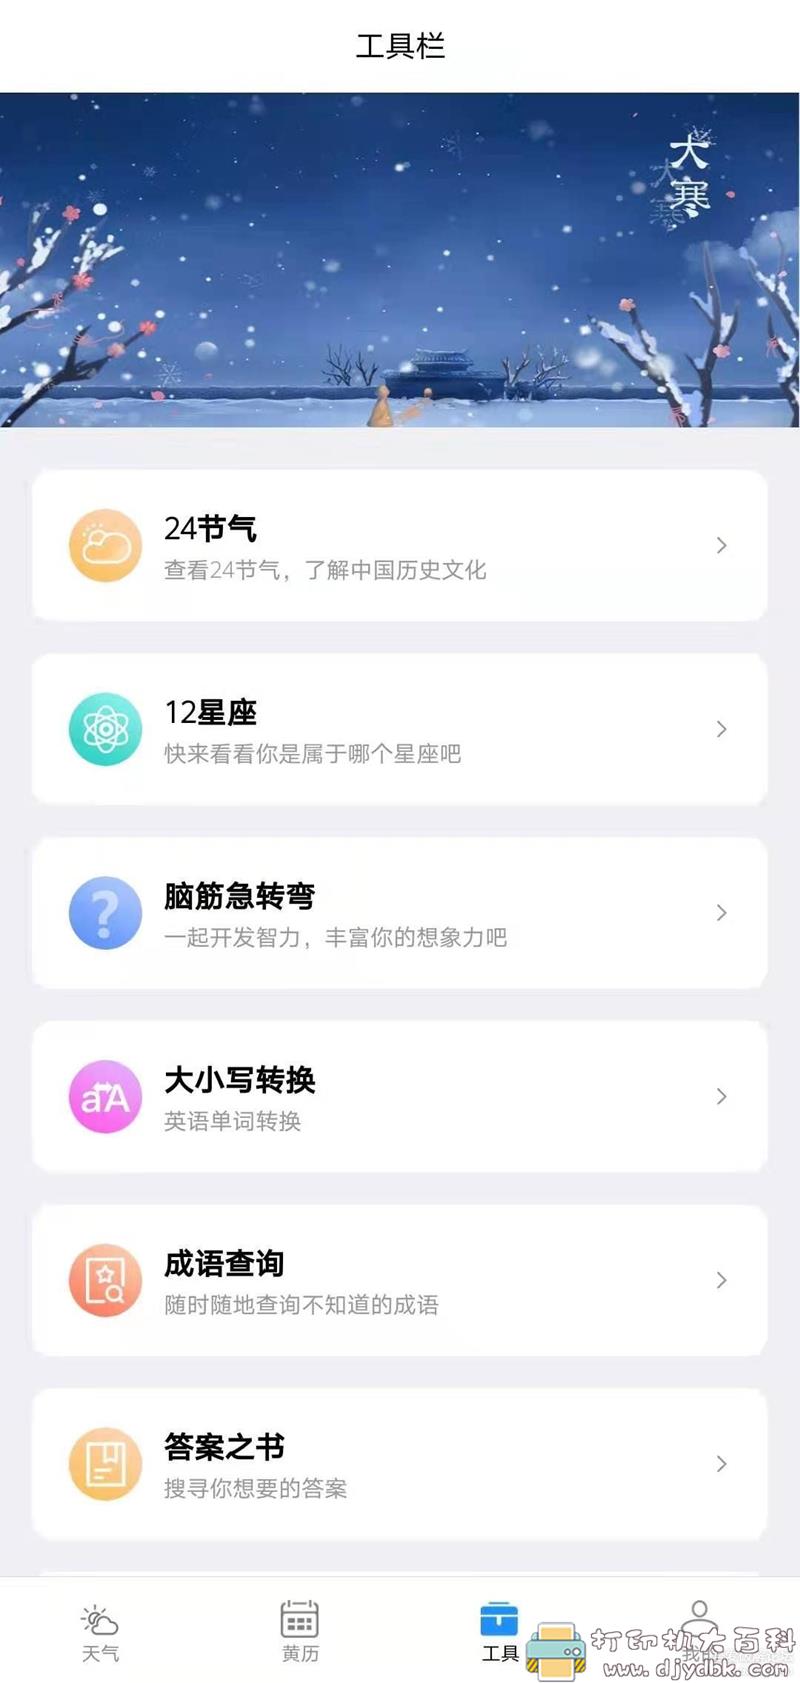 [Android]【天气预报app】好天气V2.2.2 配图 No.3